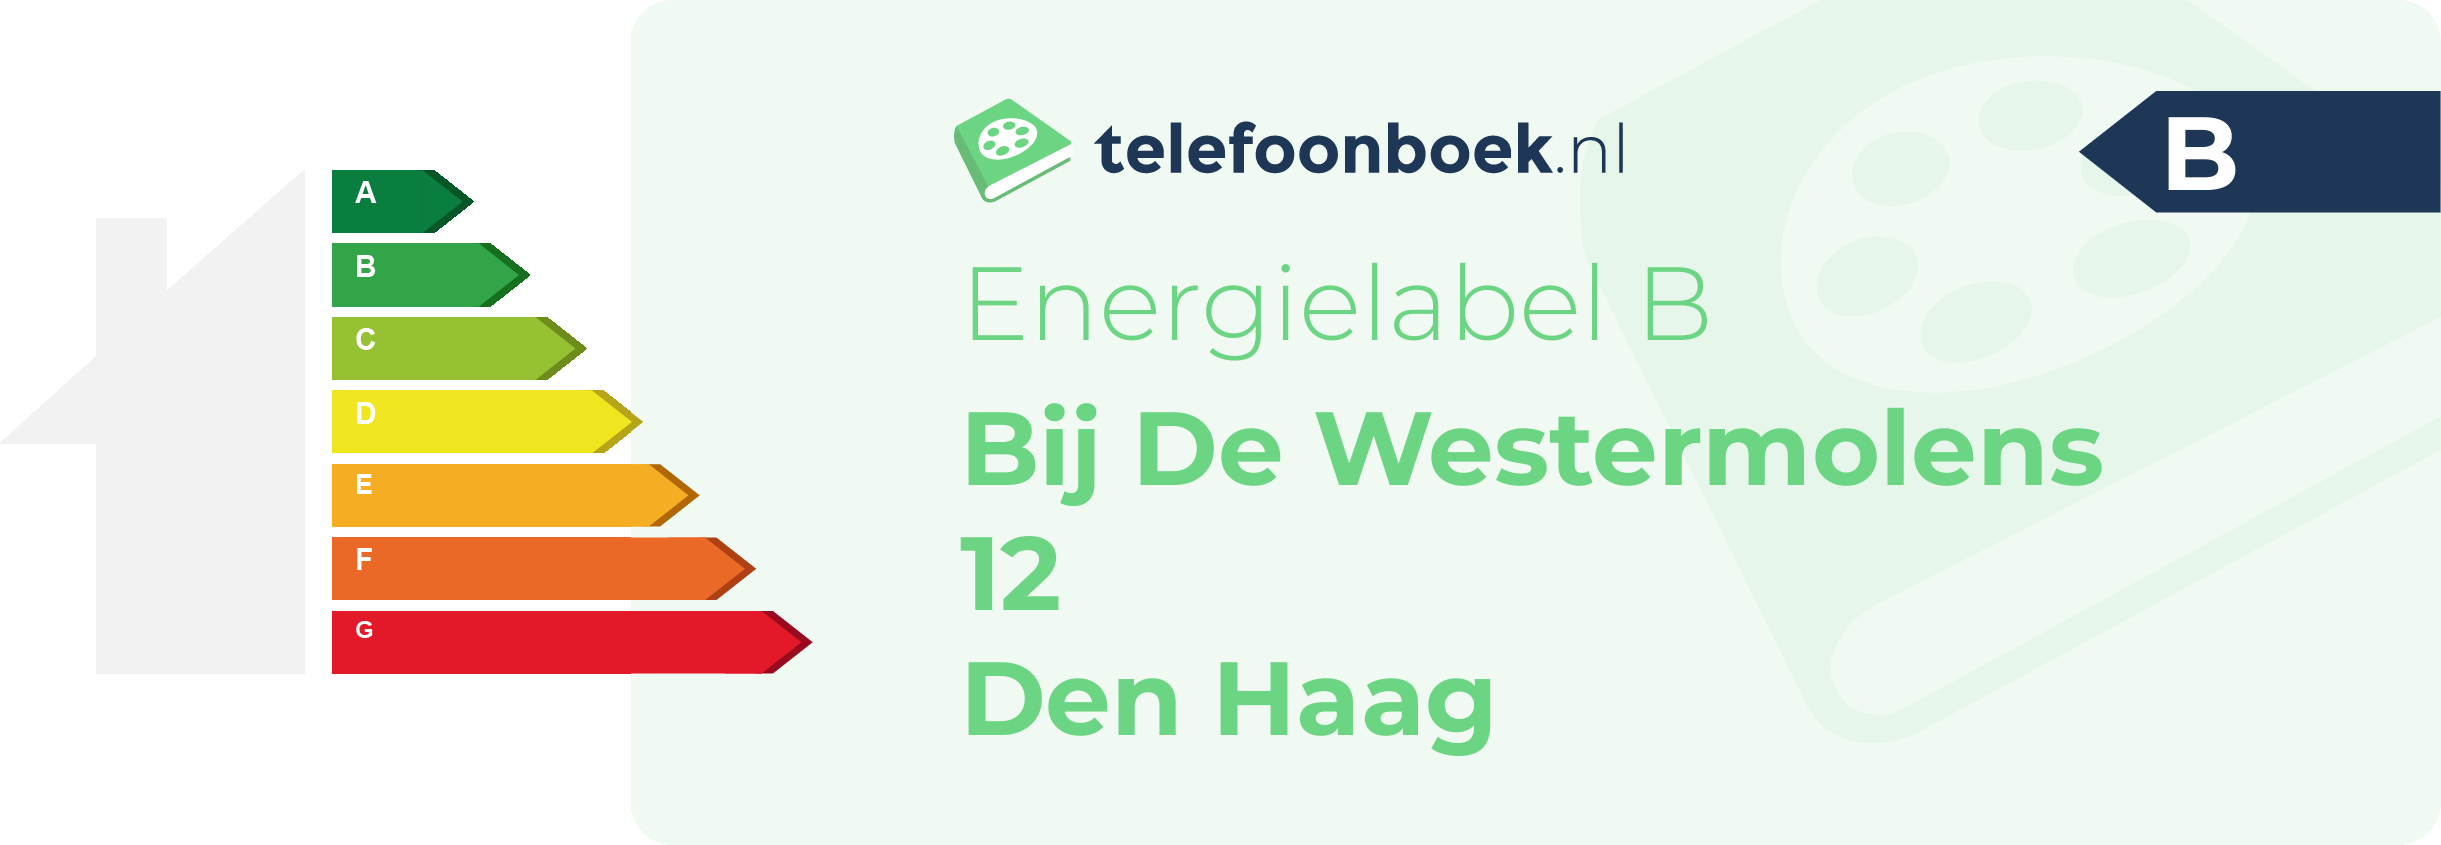 Energielabel Bij De Westermolens 12 Den Haag